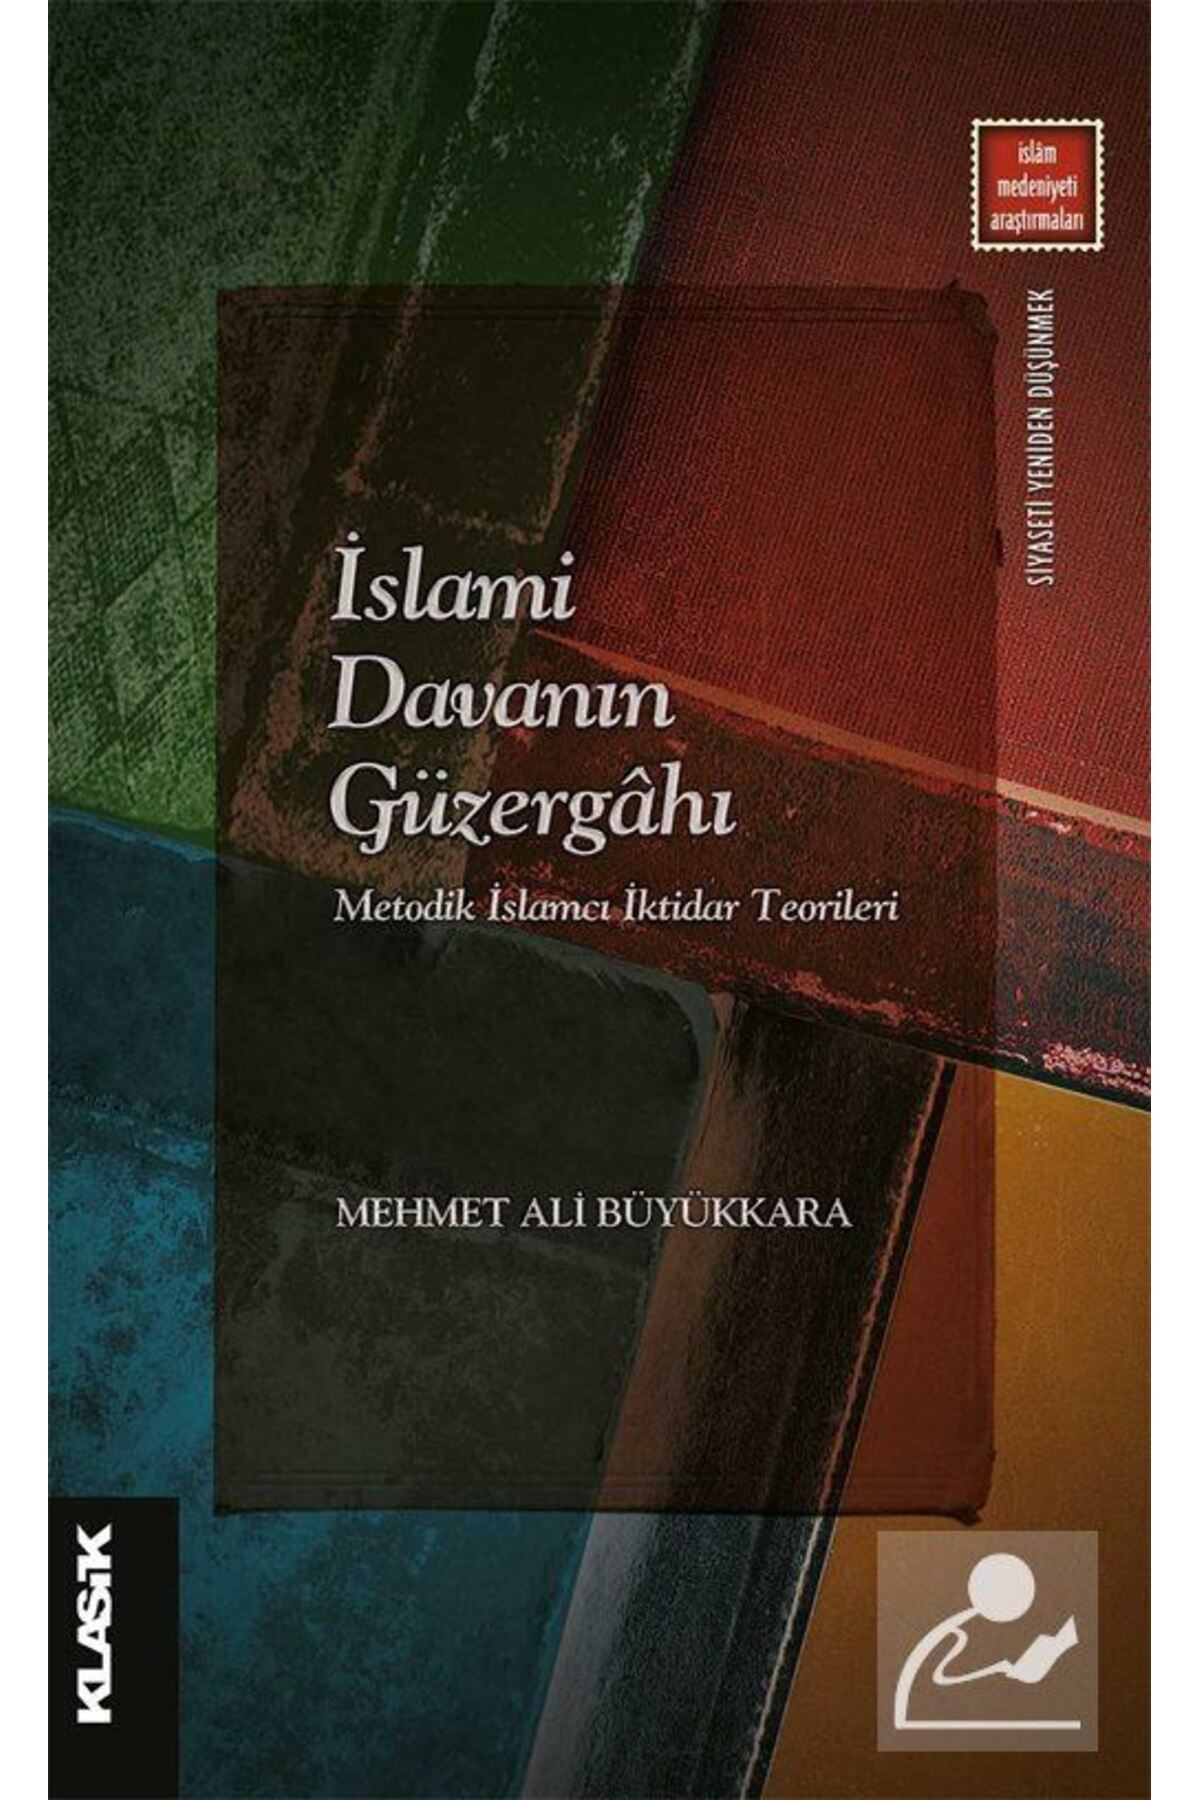 Klasik Yayınları Islami Davanın Güzergahı & Metodik Islamcı Iktidar Teorileri